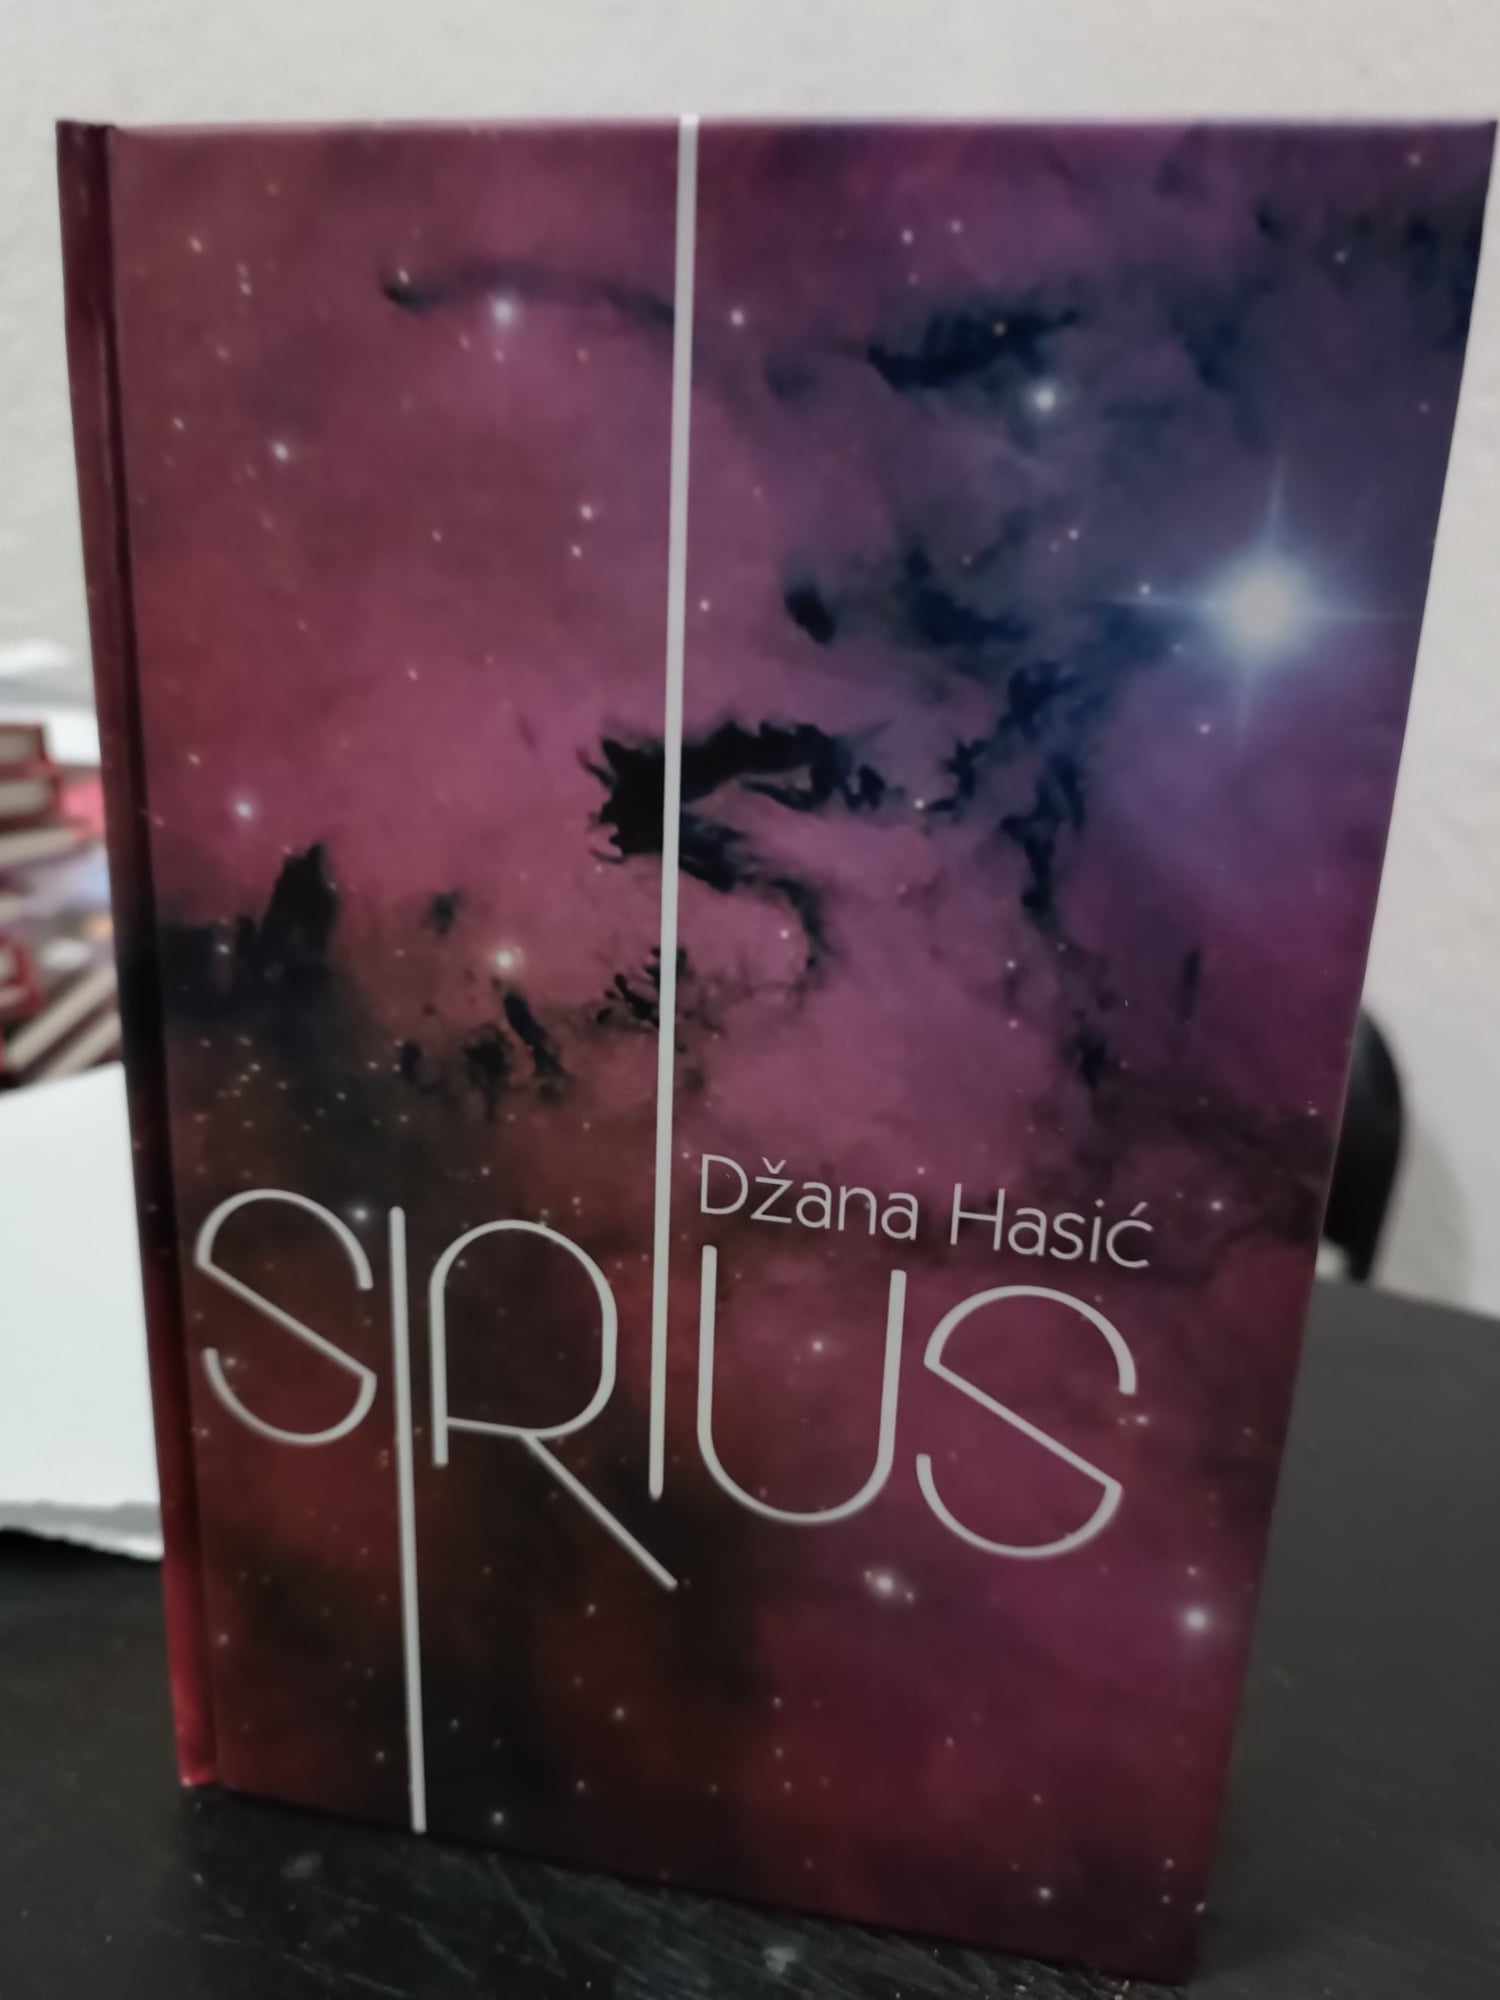 U Živinicama promovirana knjiga “Sirius” autorice Džane Hasić